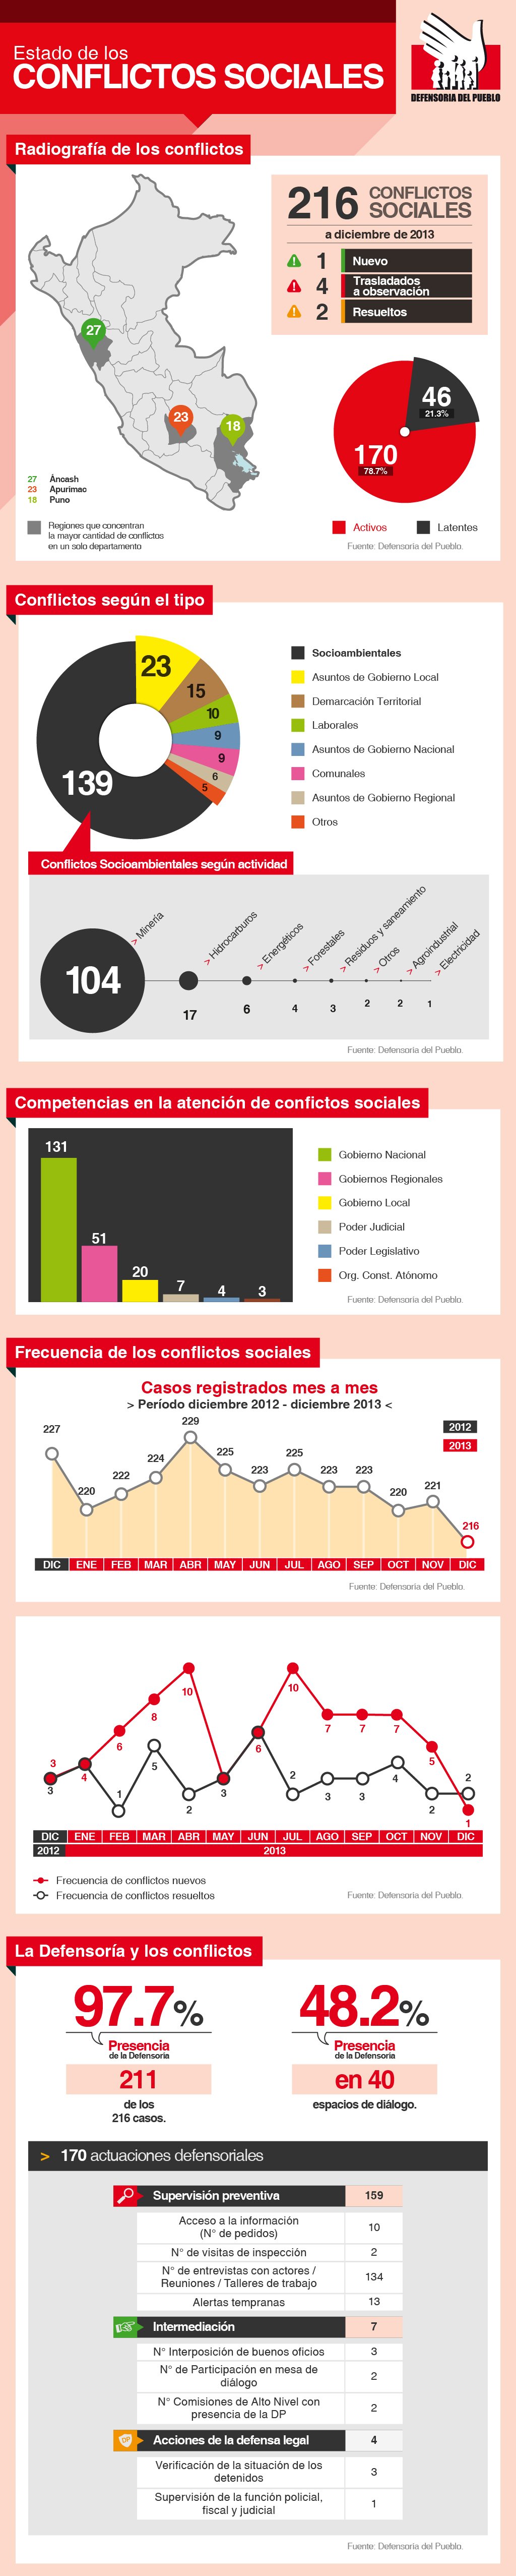 infografia-reporte de conflictos sociales-118